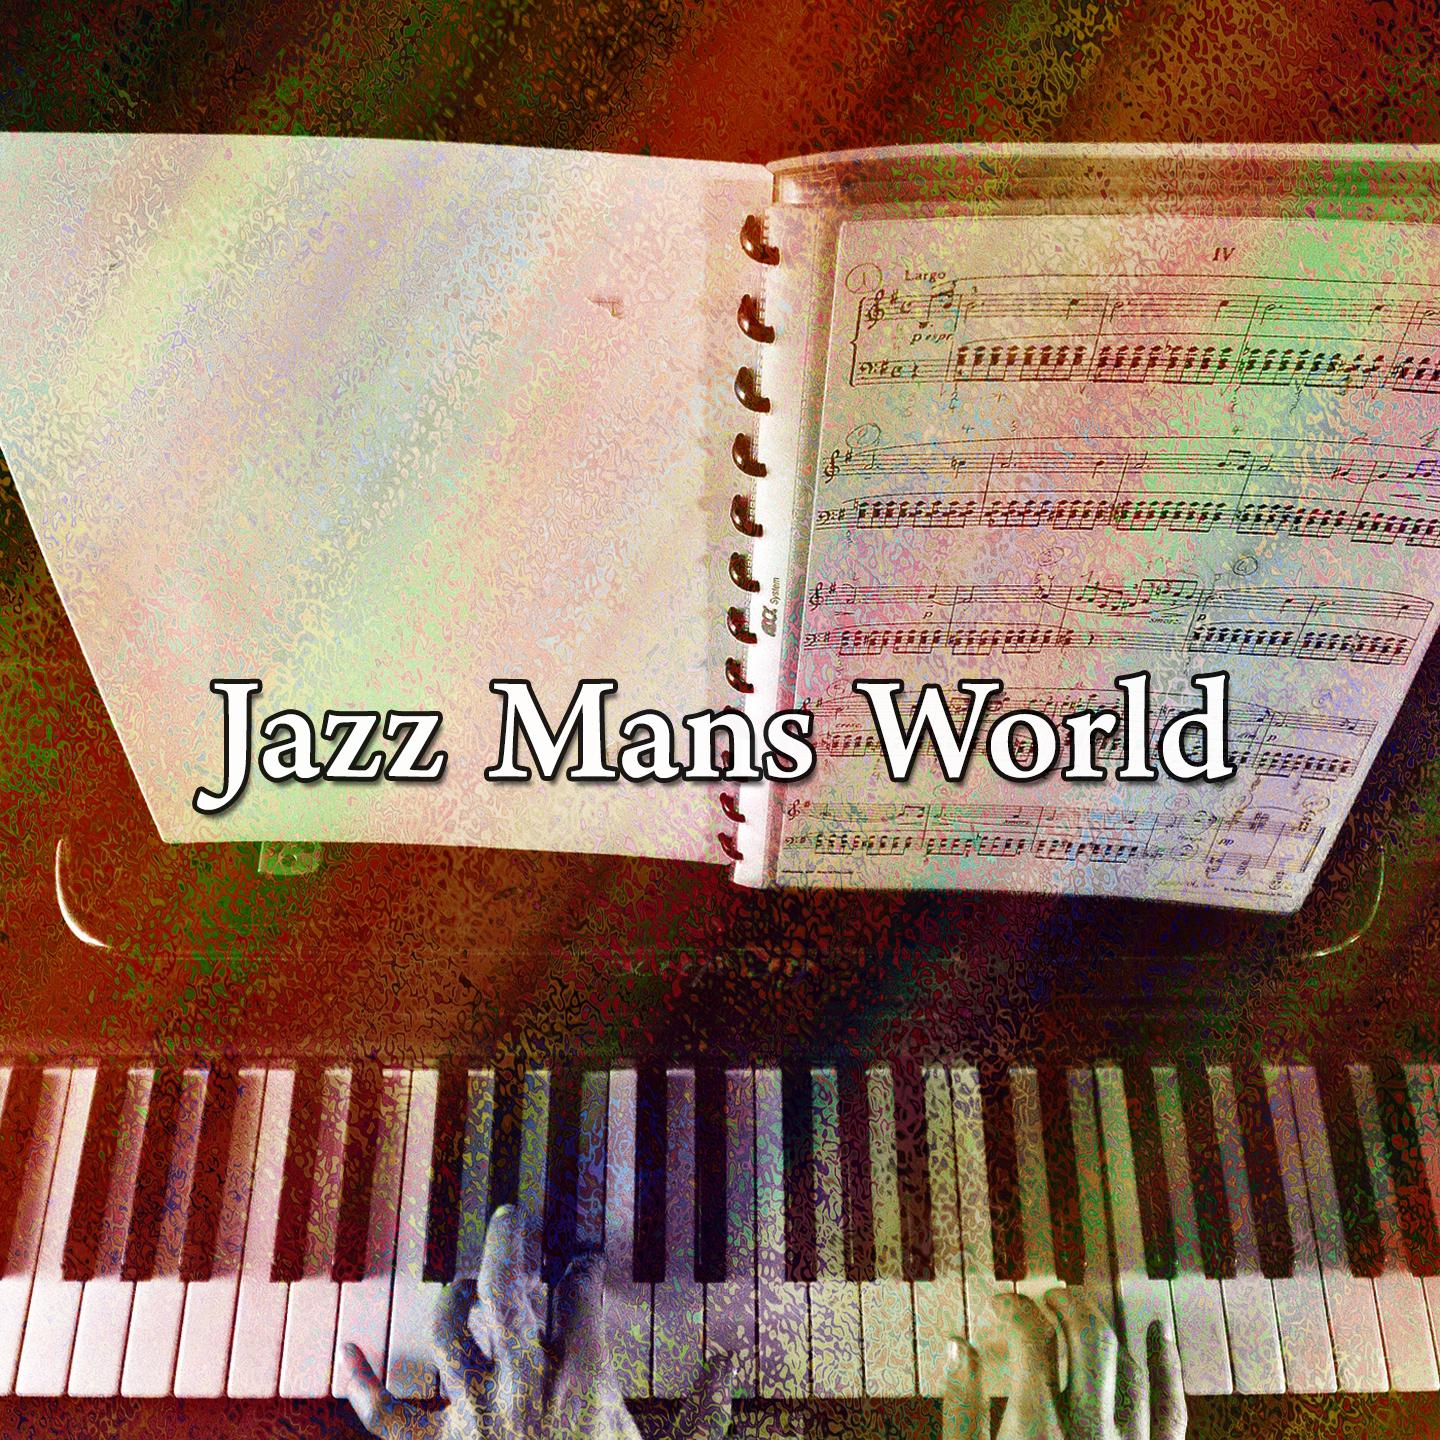 Jazz Mans World